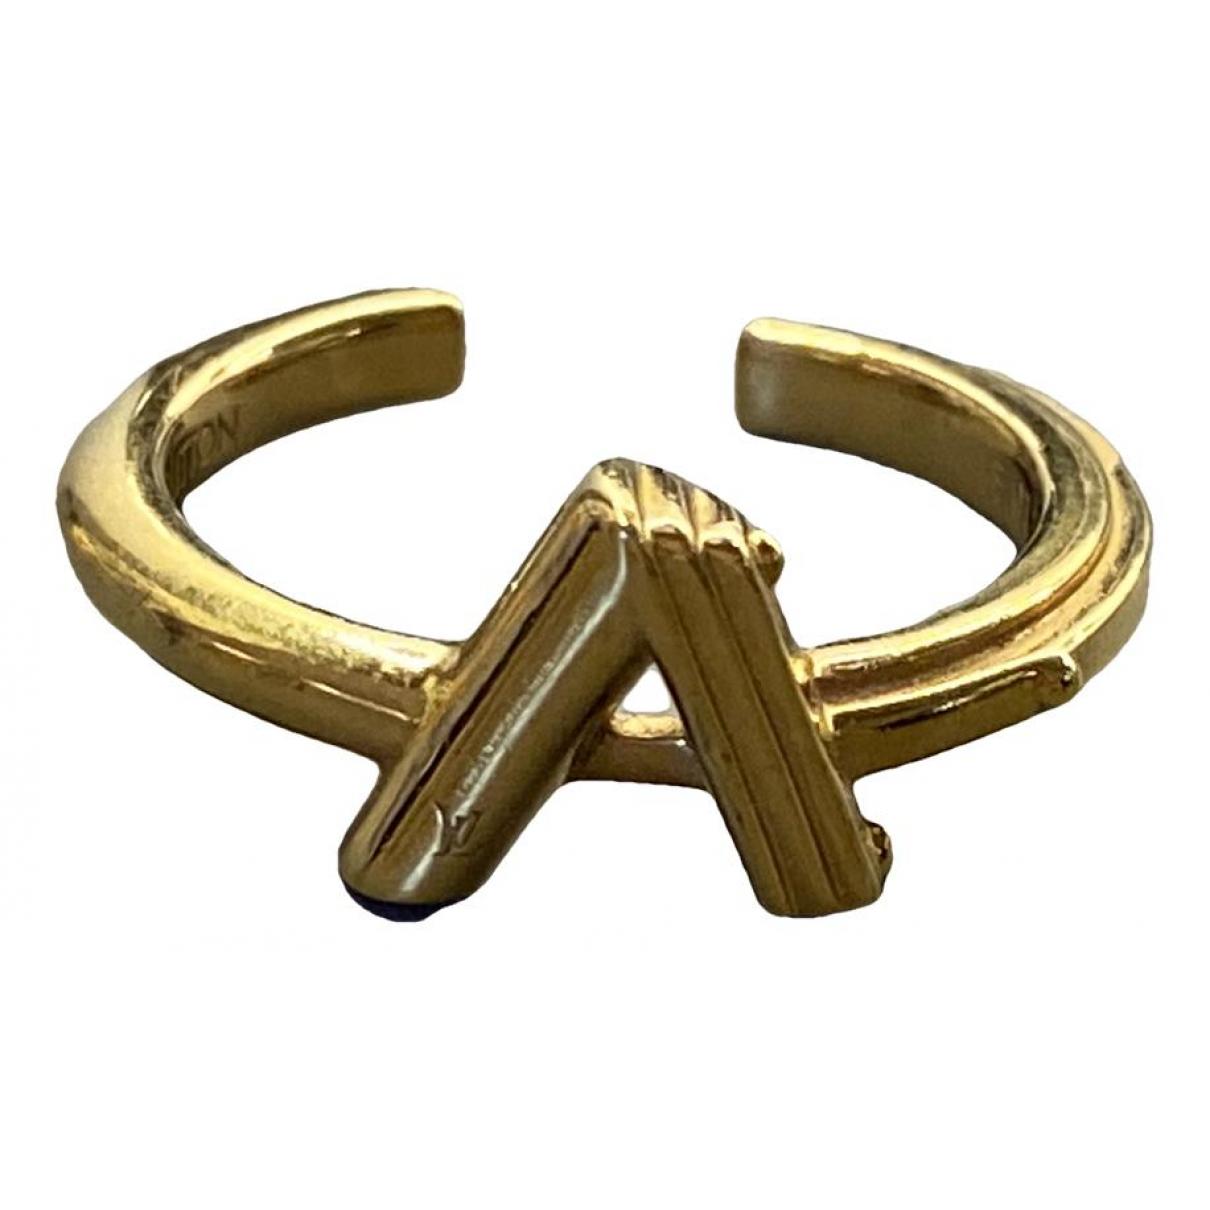 Monogram ring Louis Vuitton Gold size 54 EU in Metal - 37376573